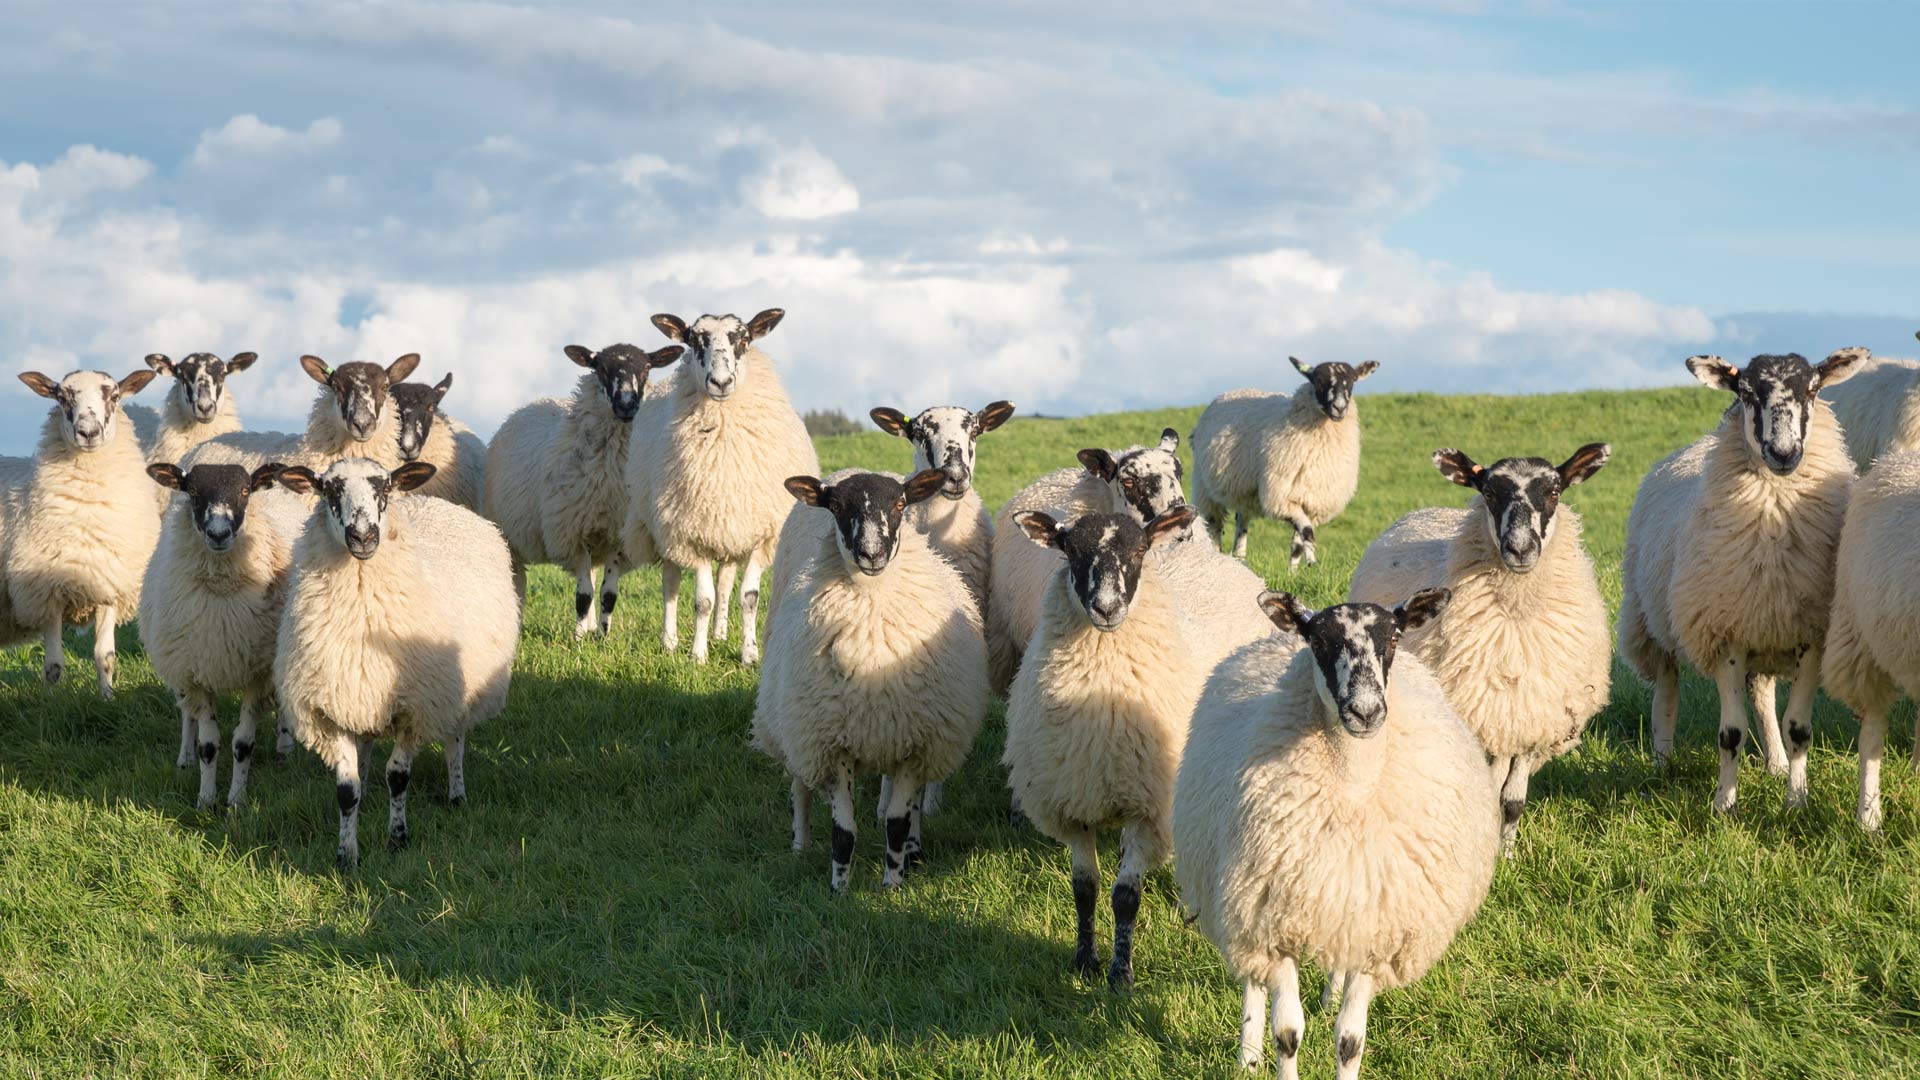 Sheep Cousins